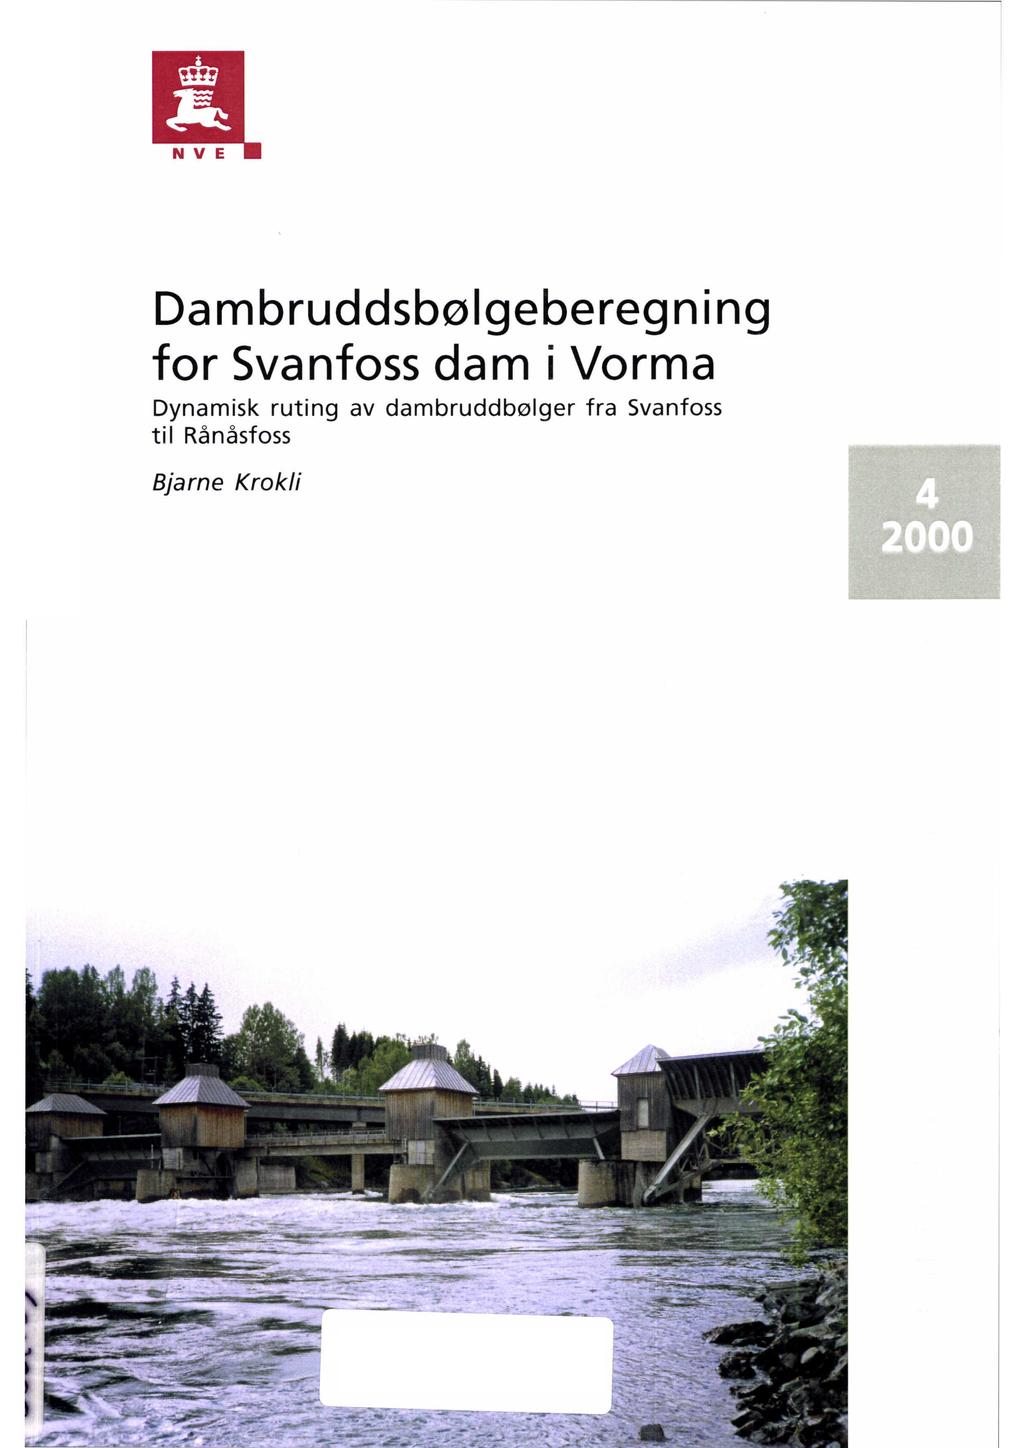 l! N V E Dambruddsbølgeberegning for Svanfossdam i Vorma Dynamisk ruting av